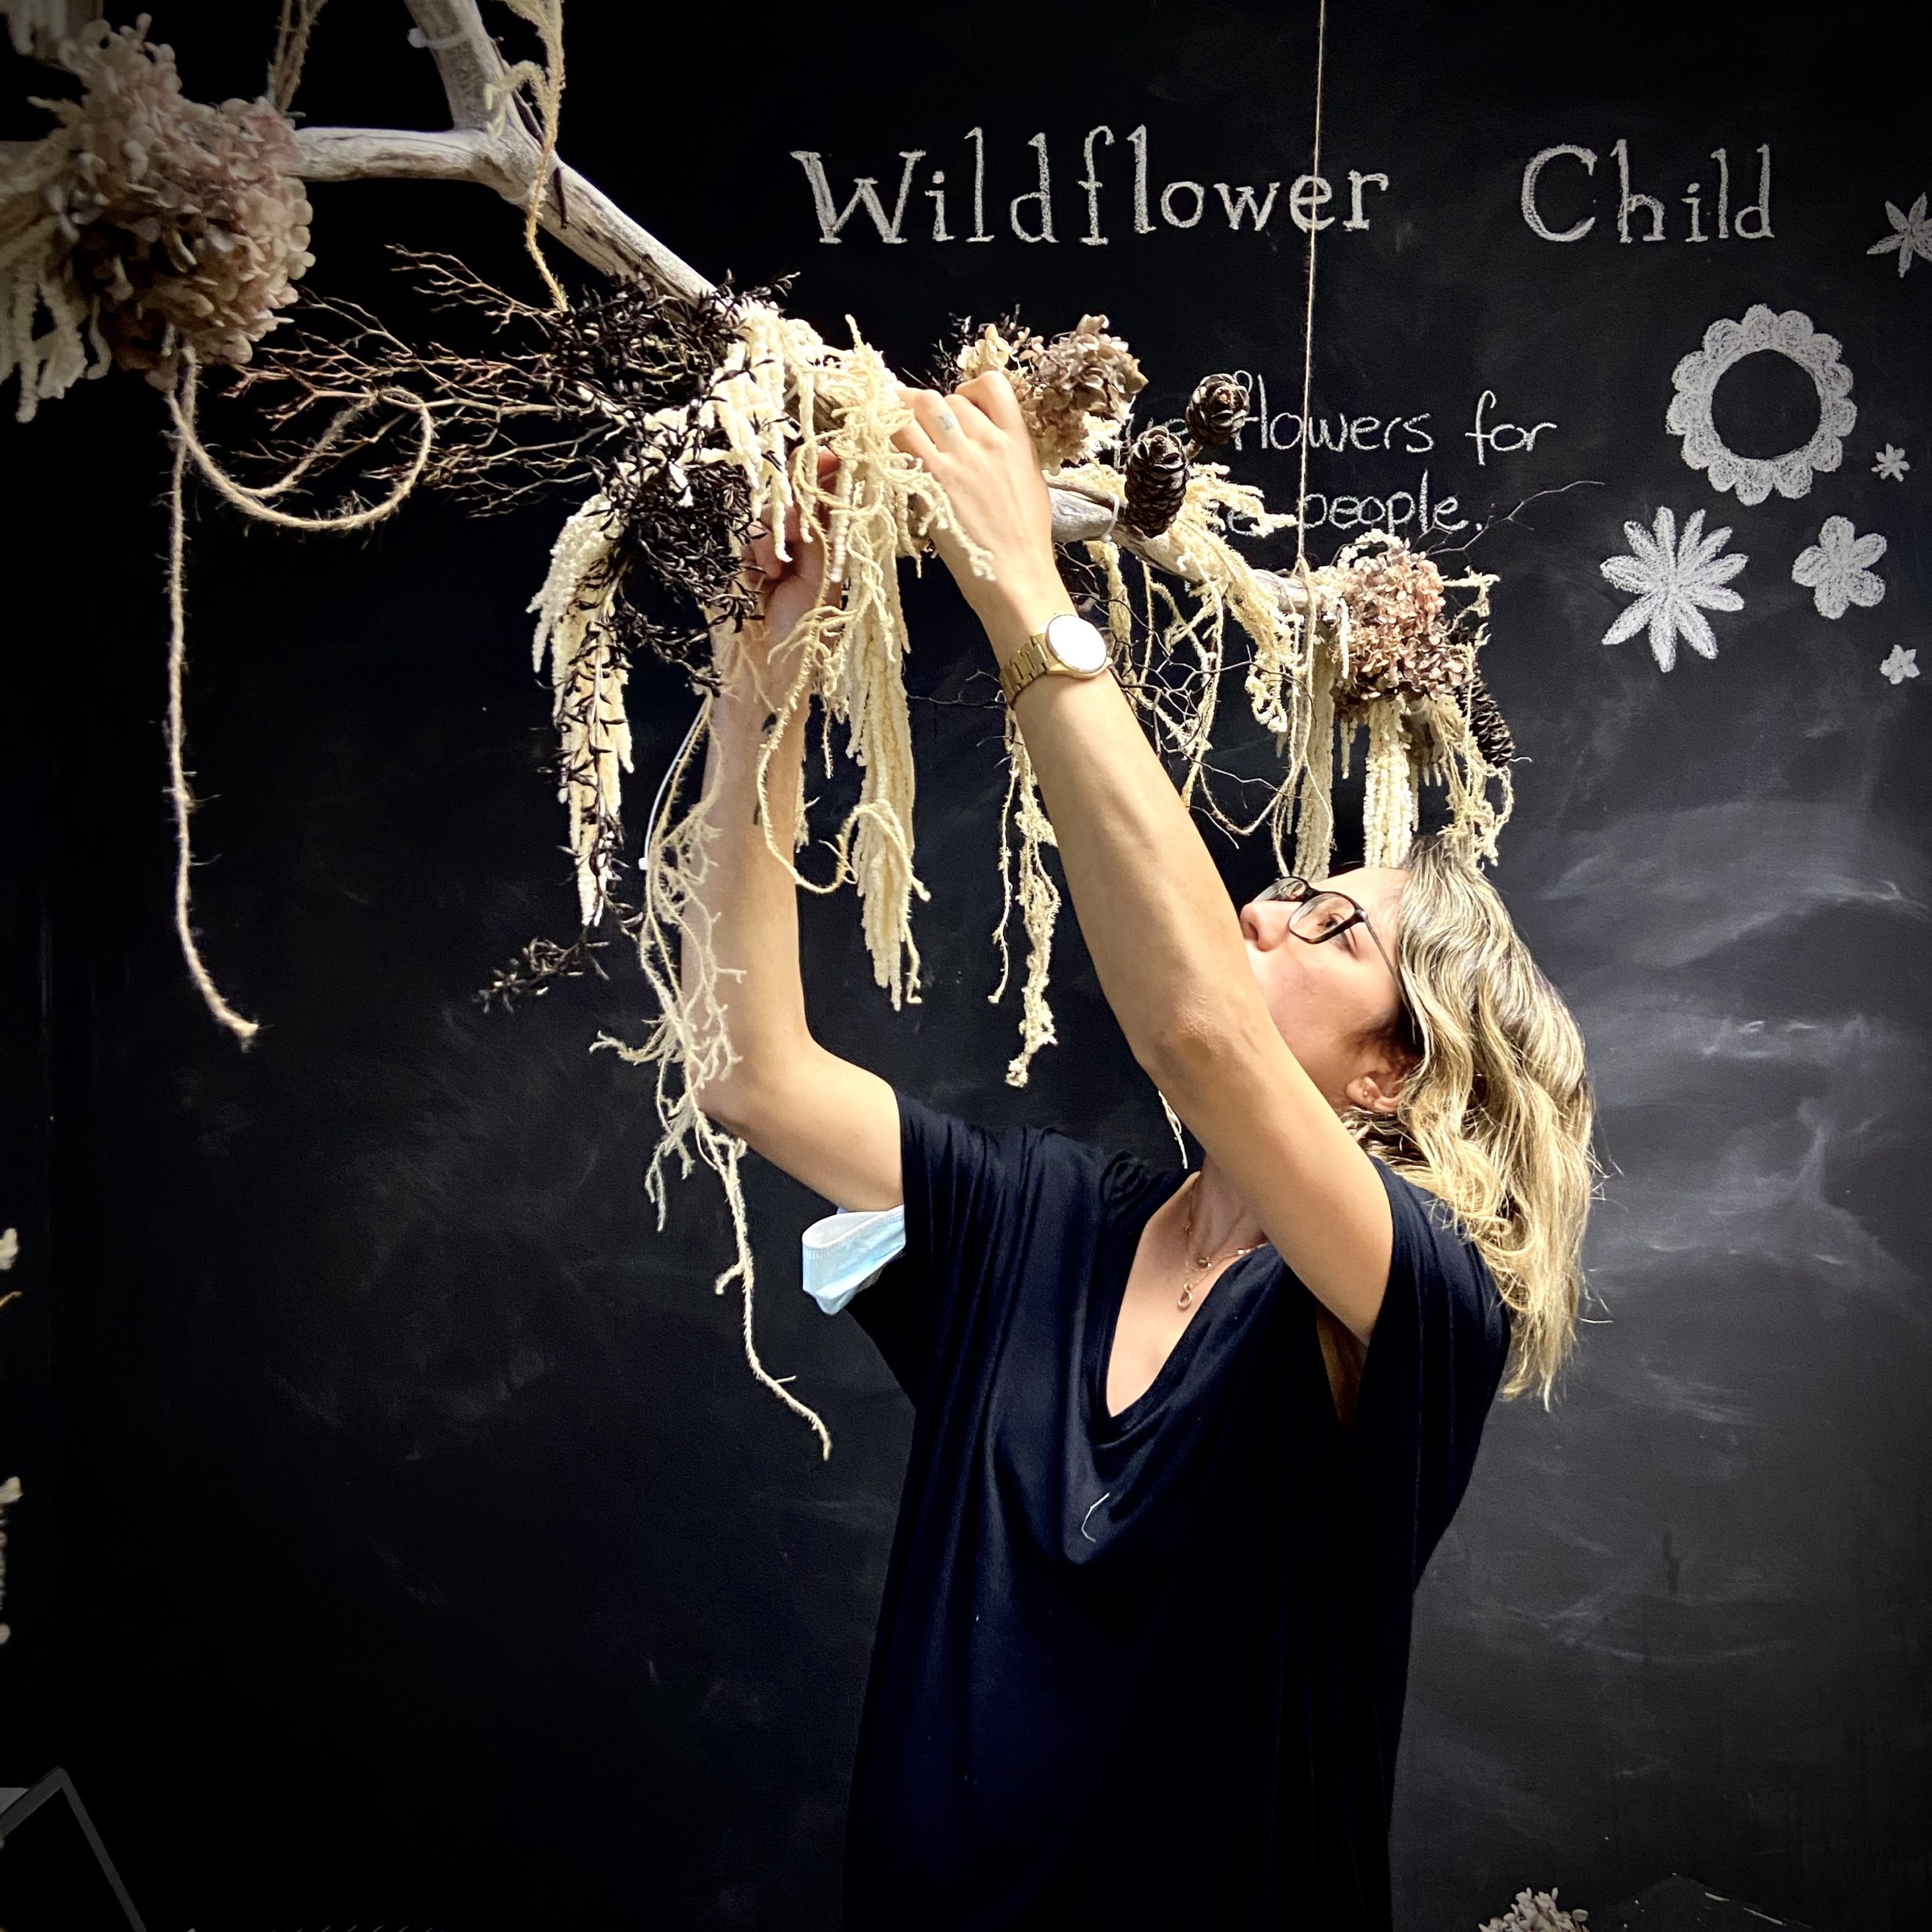 Wildflower Child